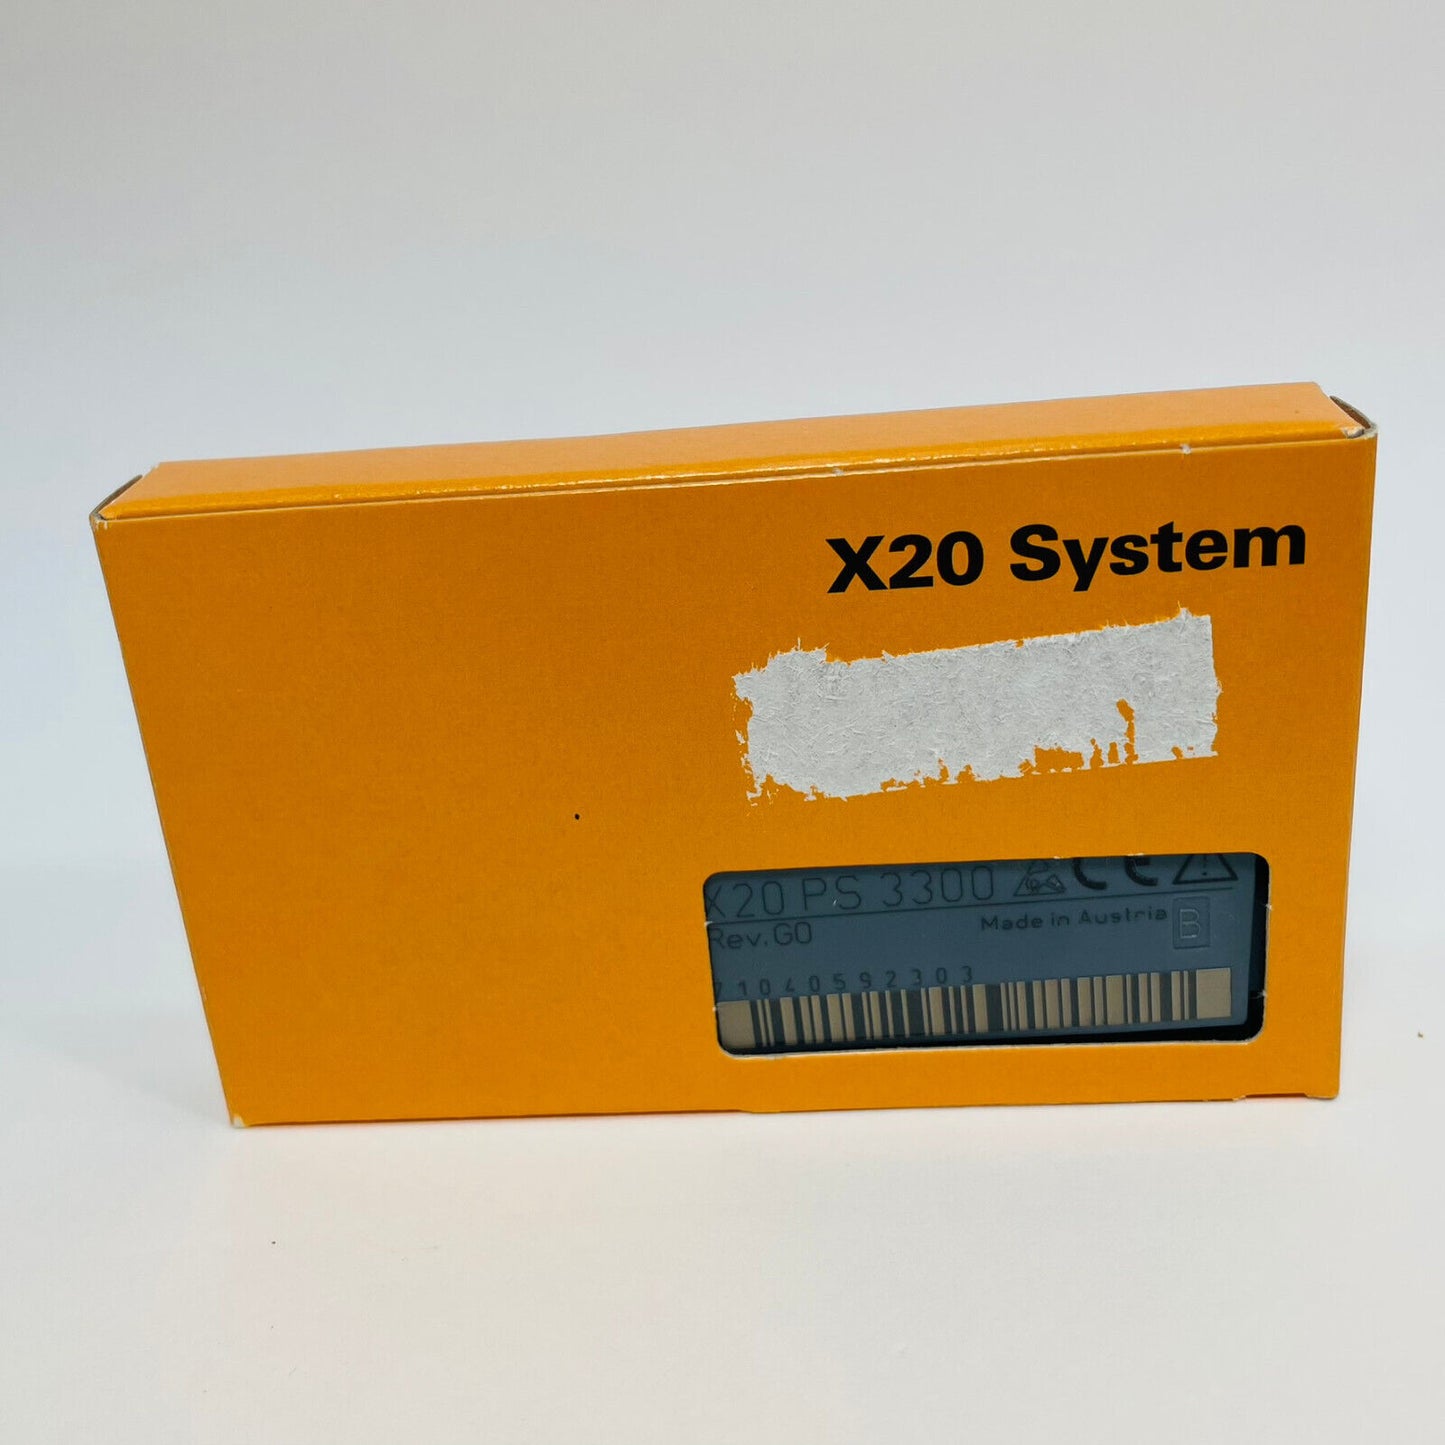 New B&R X20PS3300 / X20 PS 3300 Module